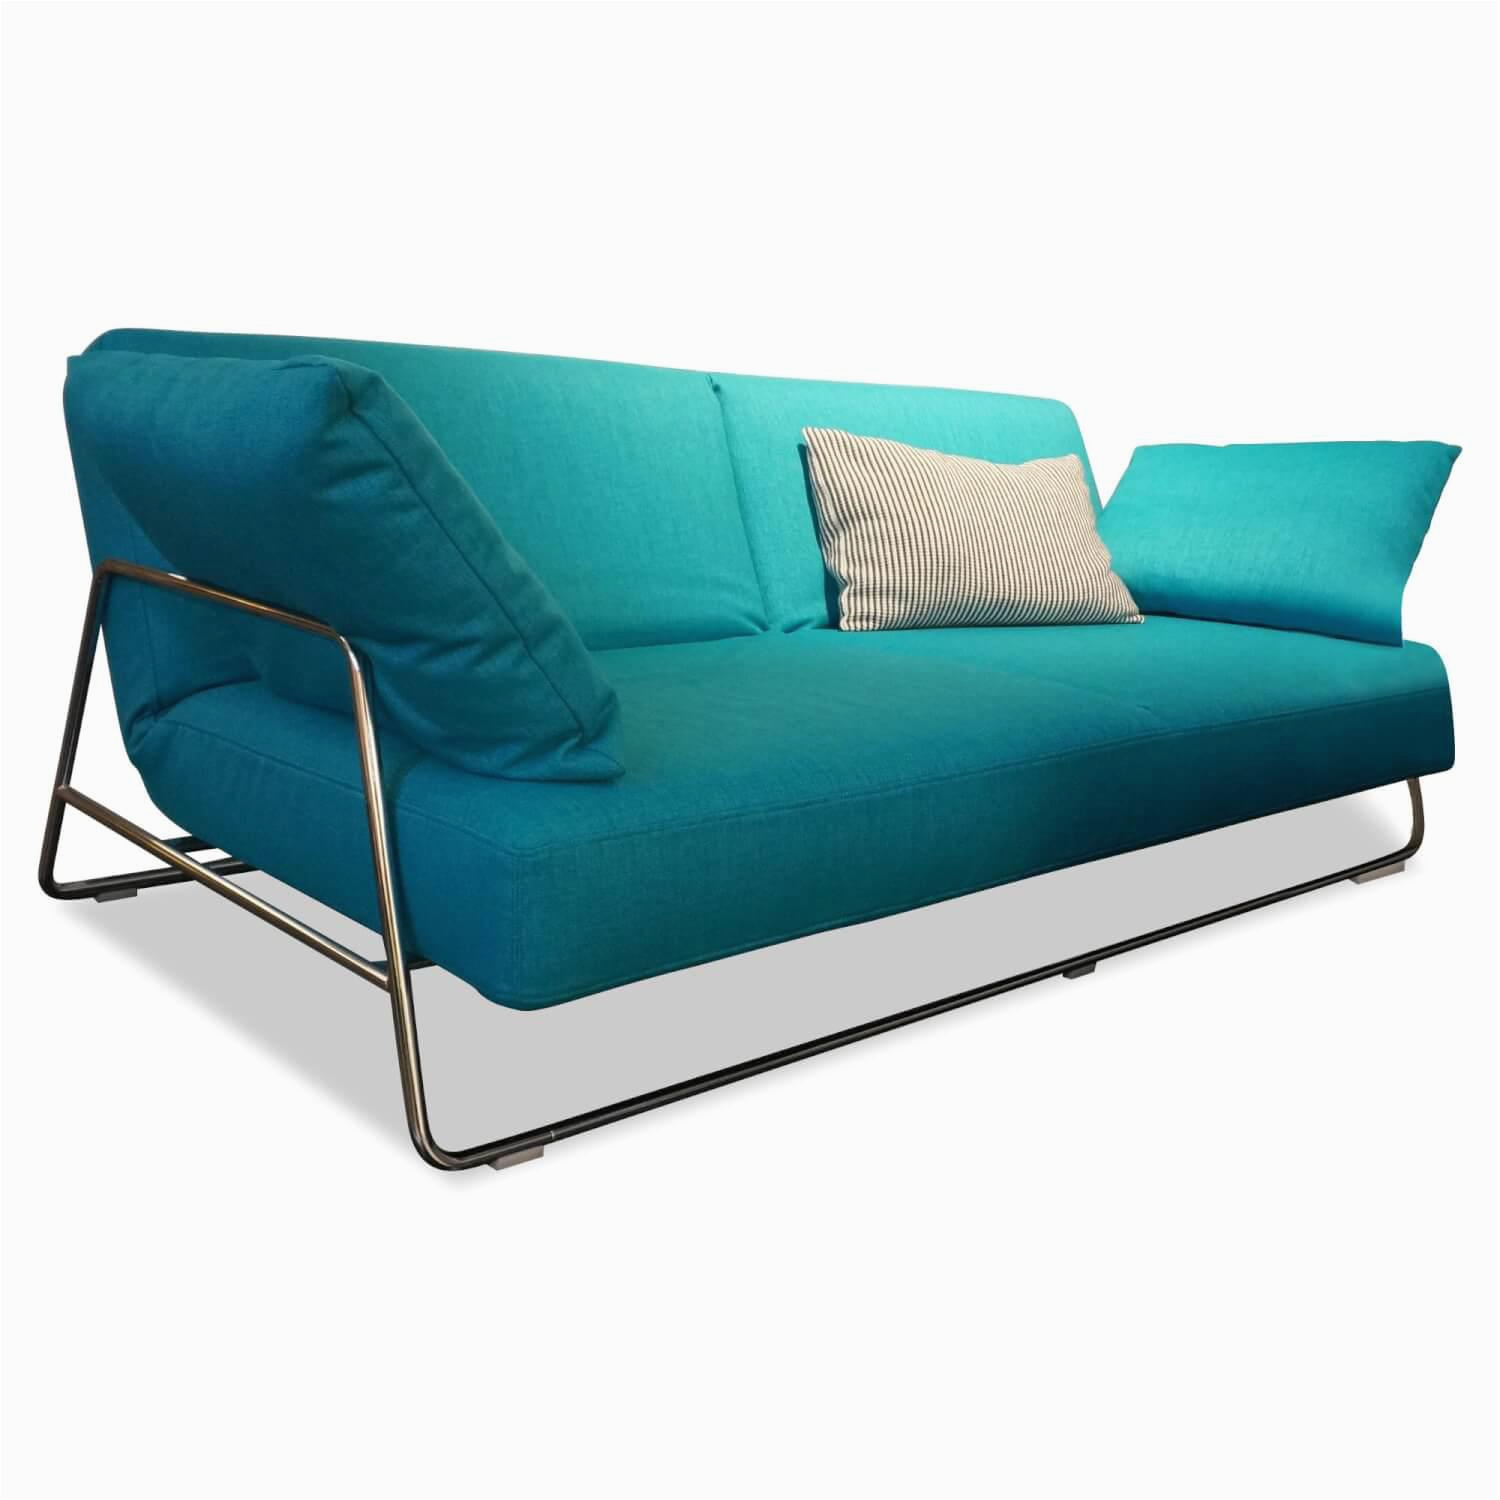 br C3 BChl mehr sofas sofa square stoff 2467 60 t C3 BCrkis 5440b2c67f54